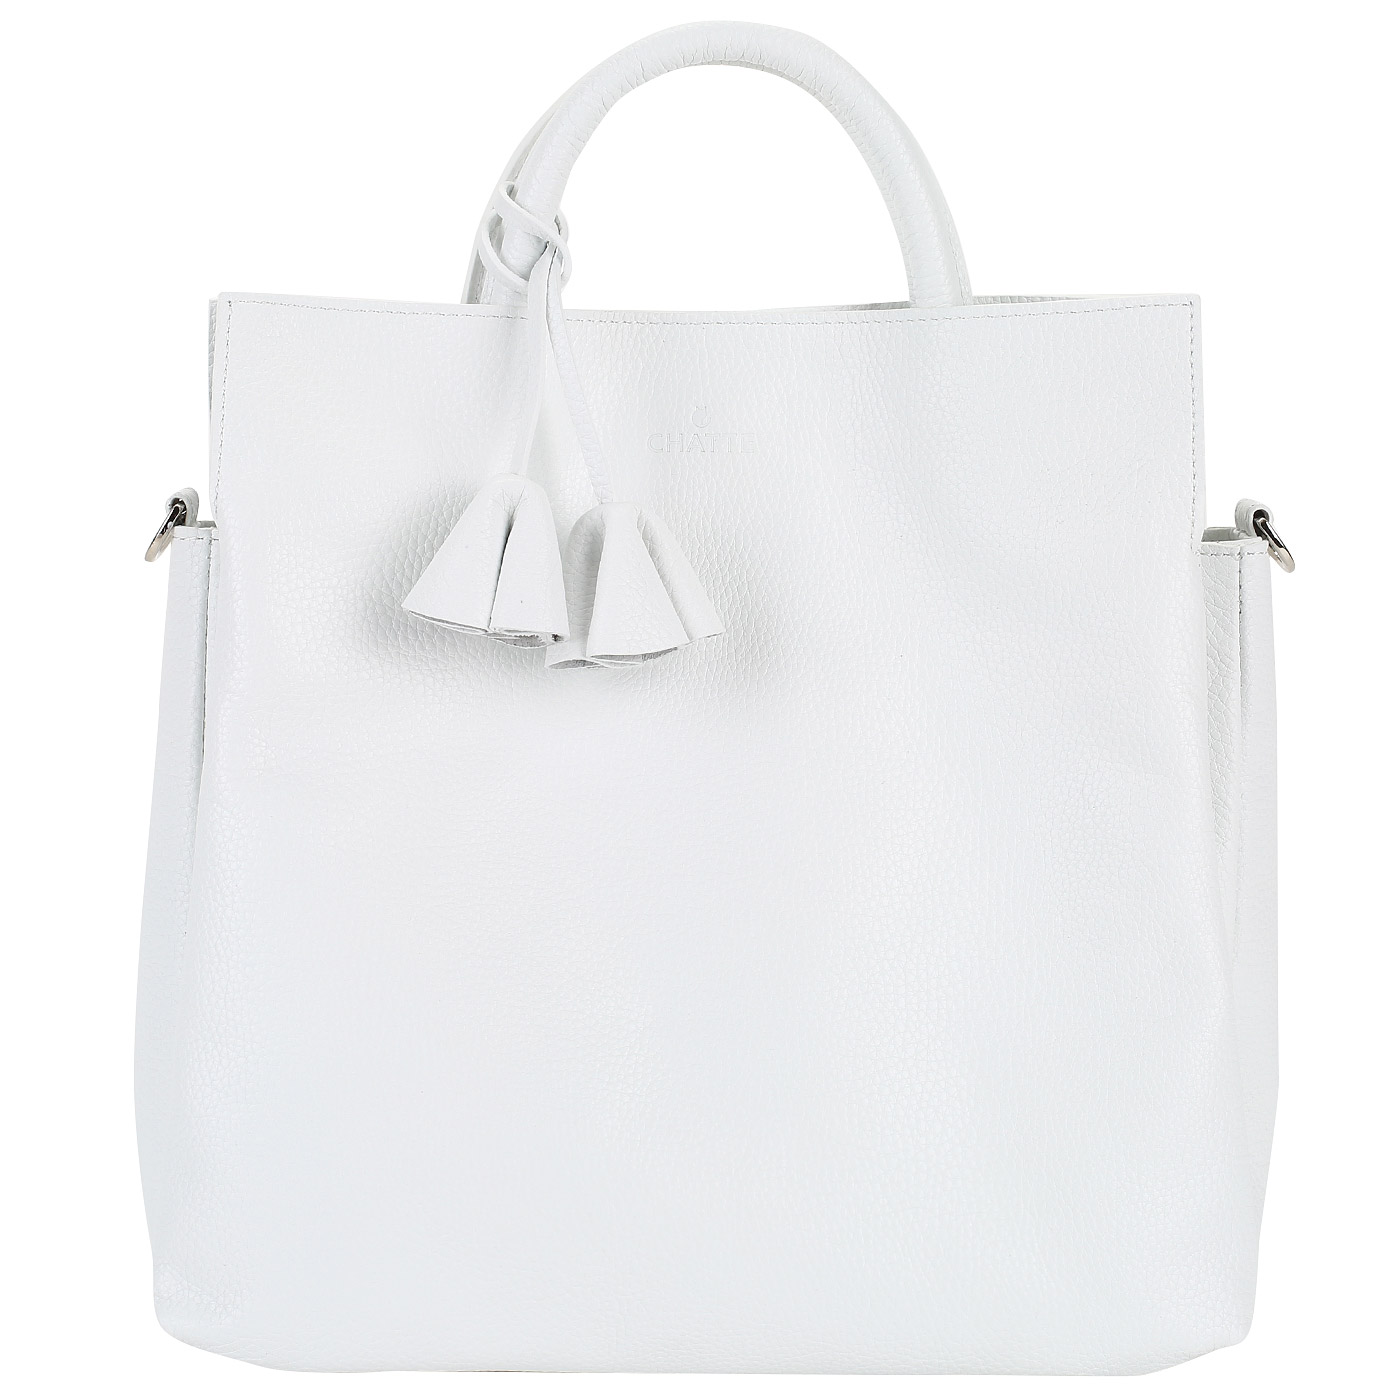 Chatte Женская сумка из белой кожи